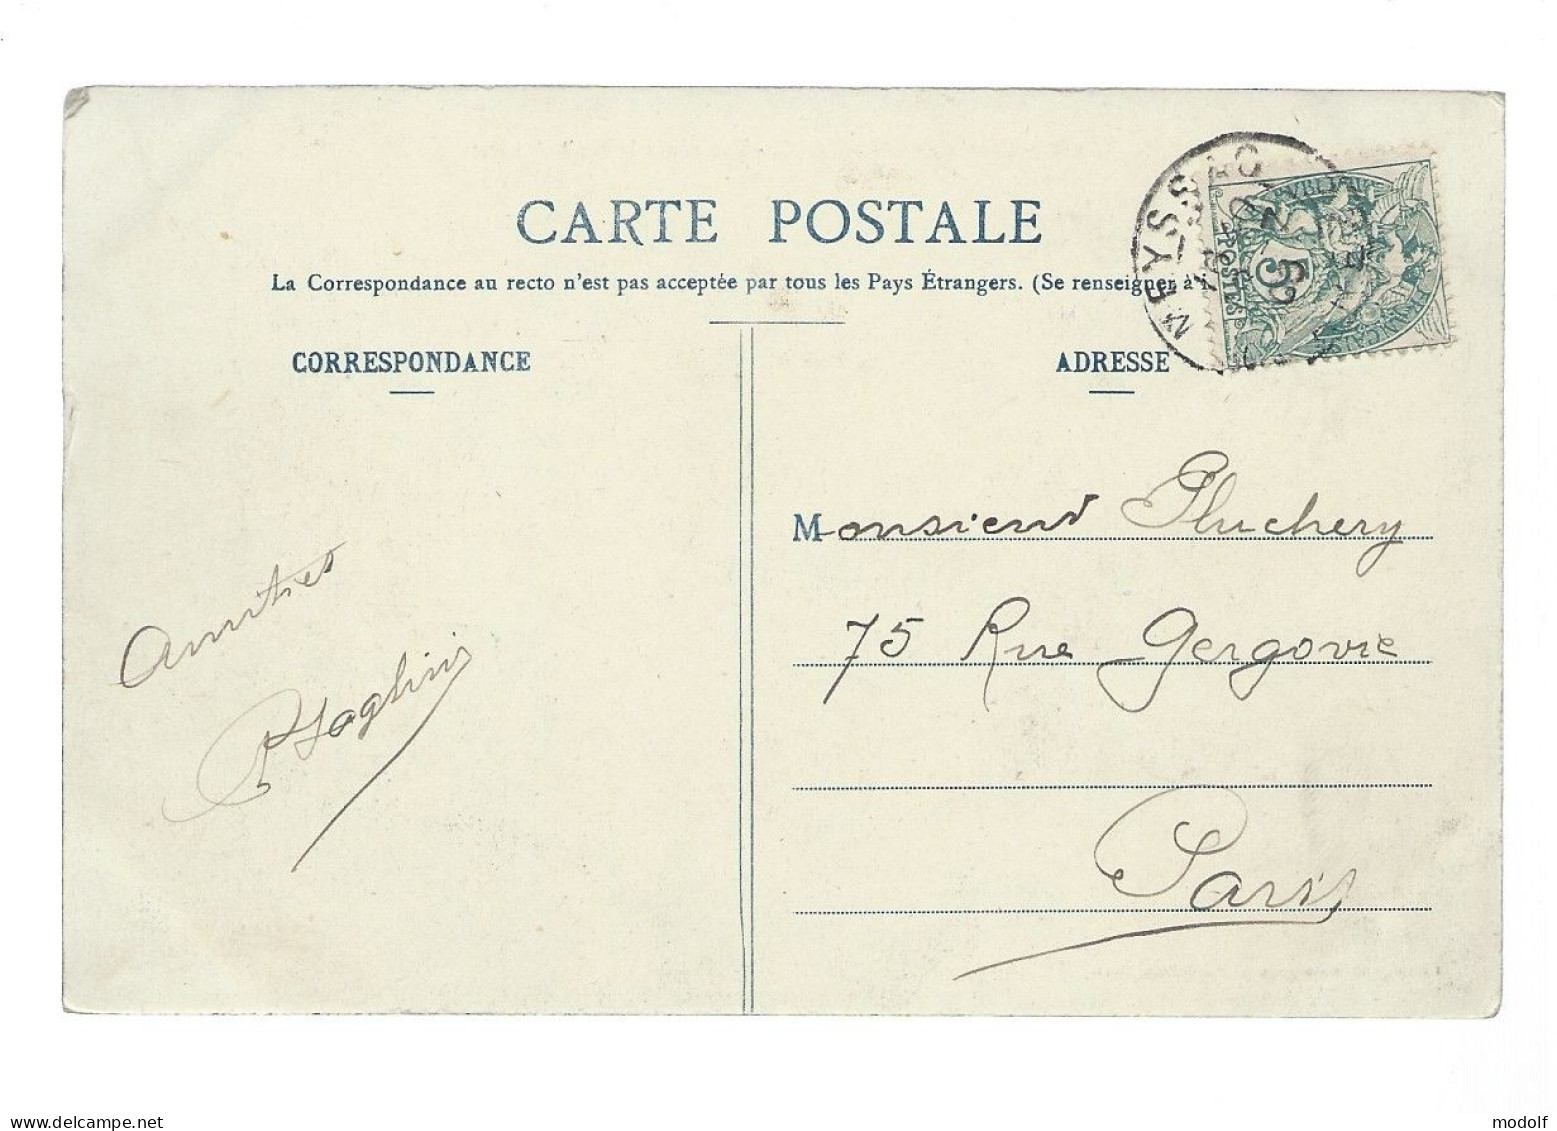 CPA - 19 - Travassac - Vue Générale Des Ardoisières - Circulée En 1906 - Other & Unclassified